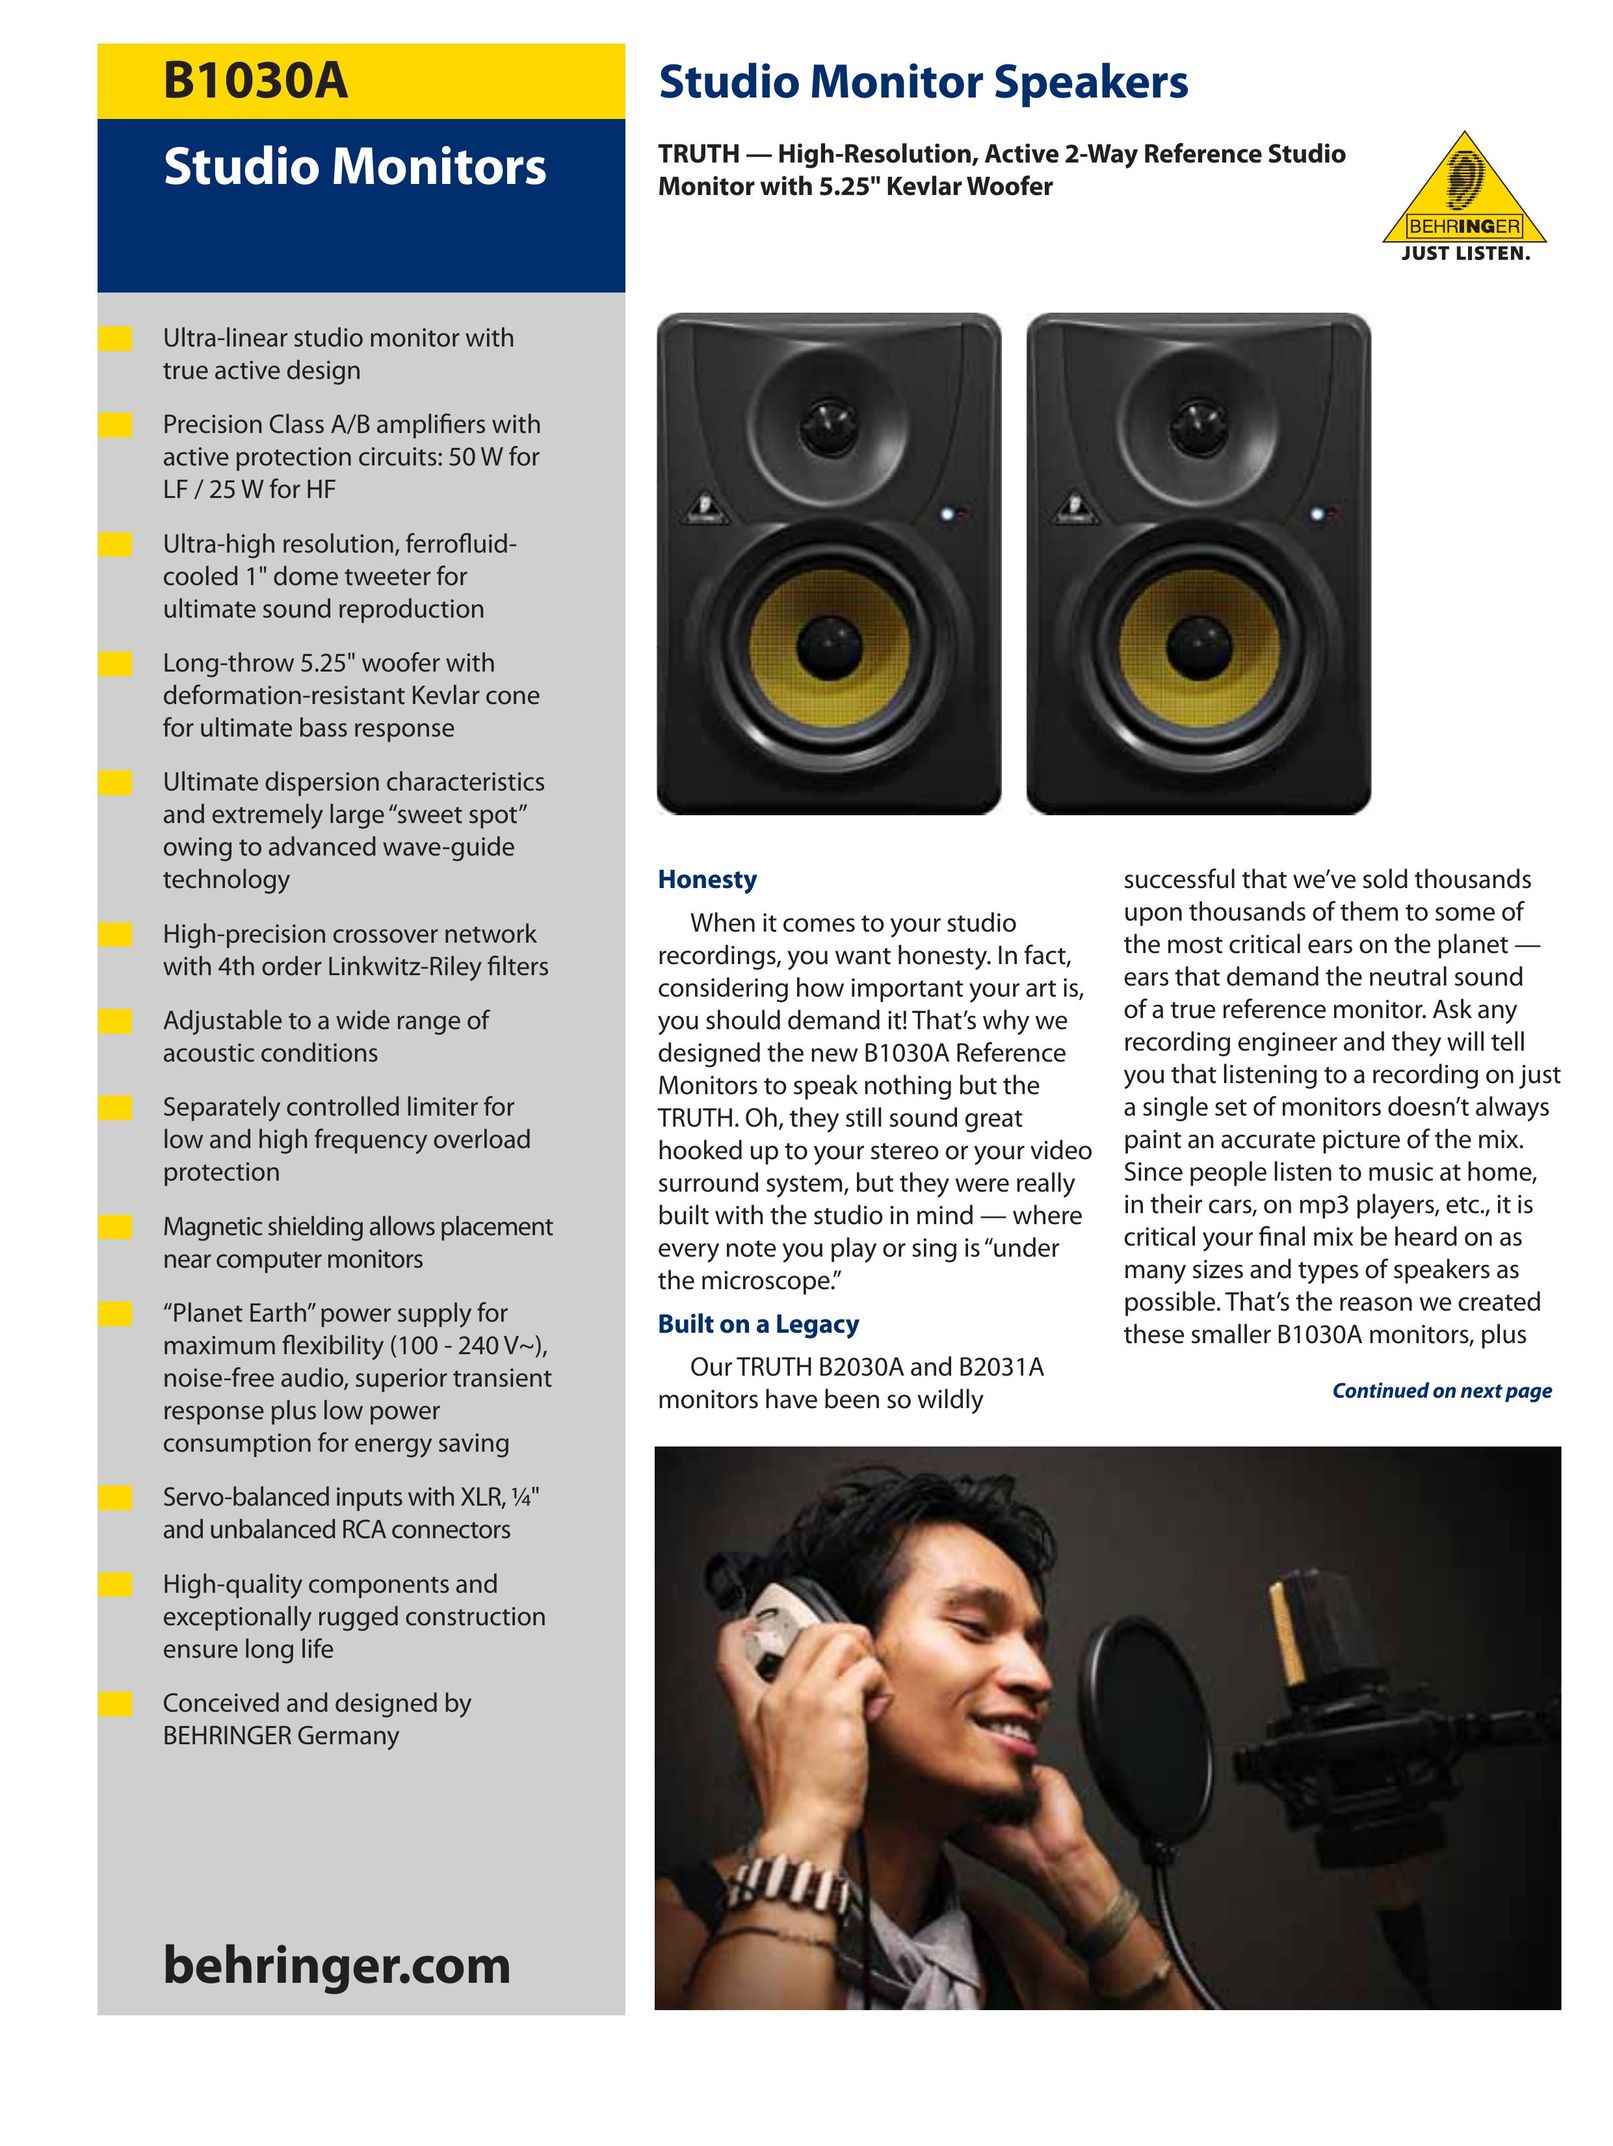 Behringer B1030A Speaker User Manual